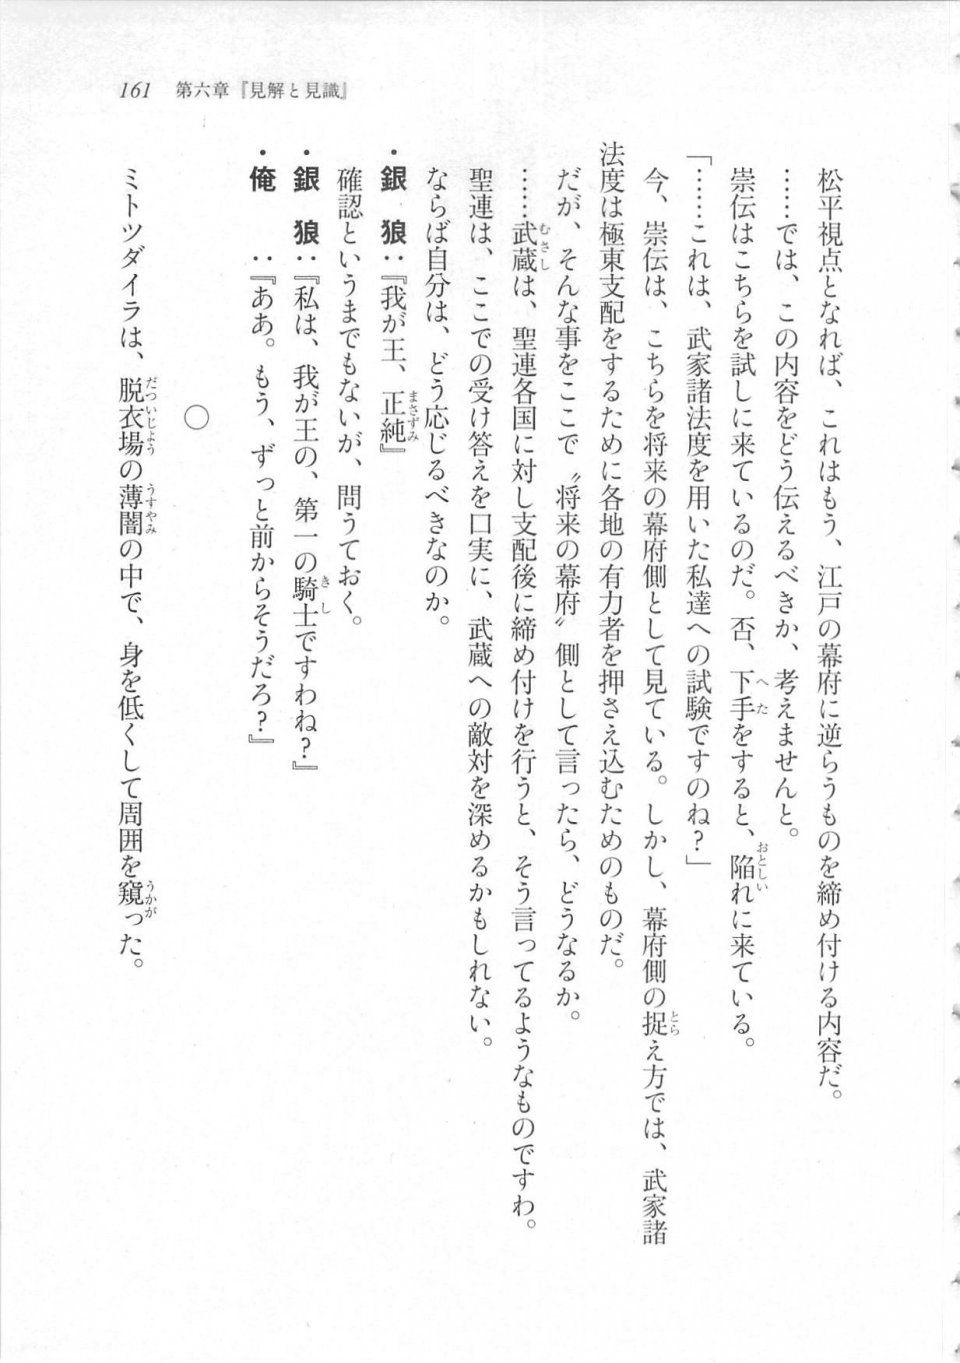 Kyoukai Senjou no Horizon LN Sidestory Vol 3 - Photo #165